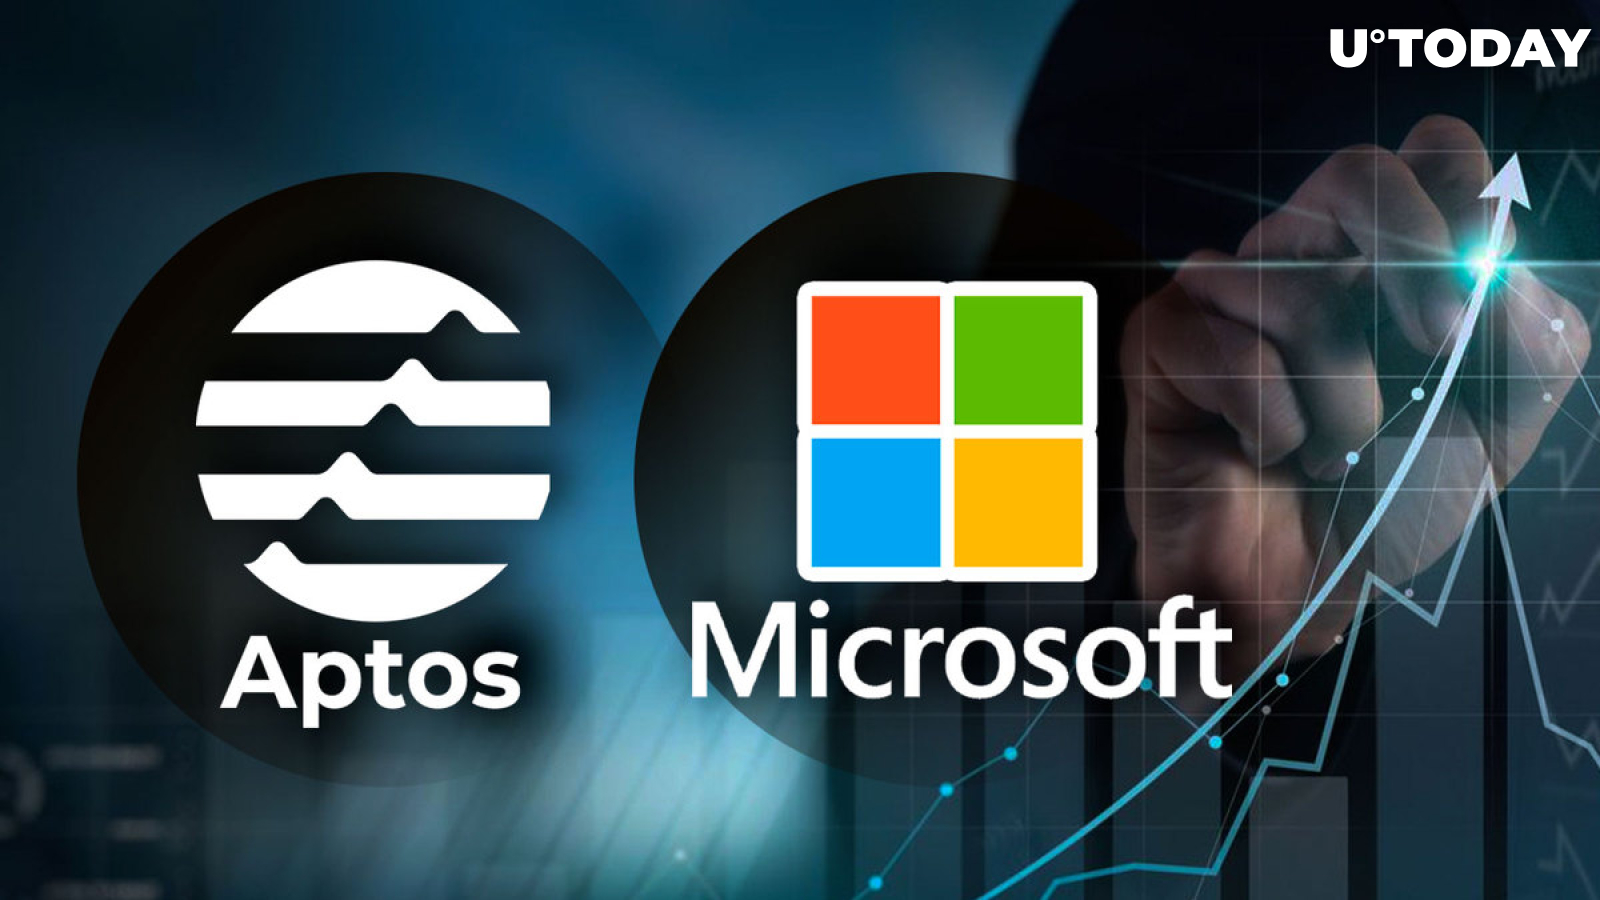 Aptos (APT) Jumps 15% After Landing Microsoft Partnership